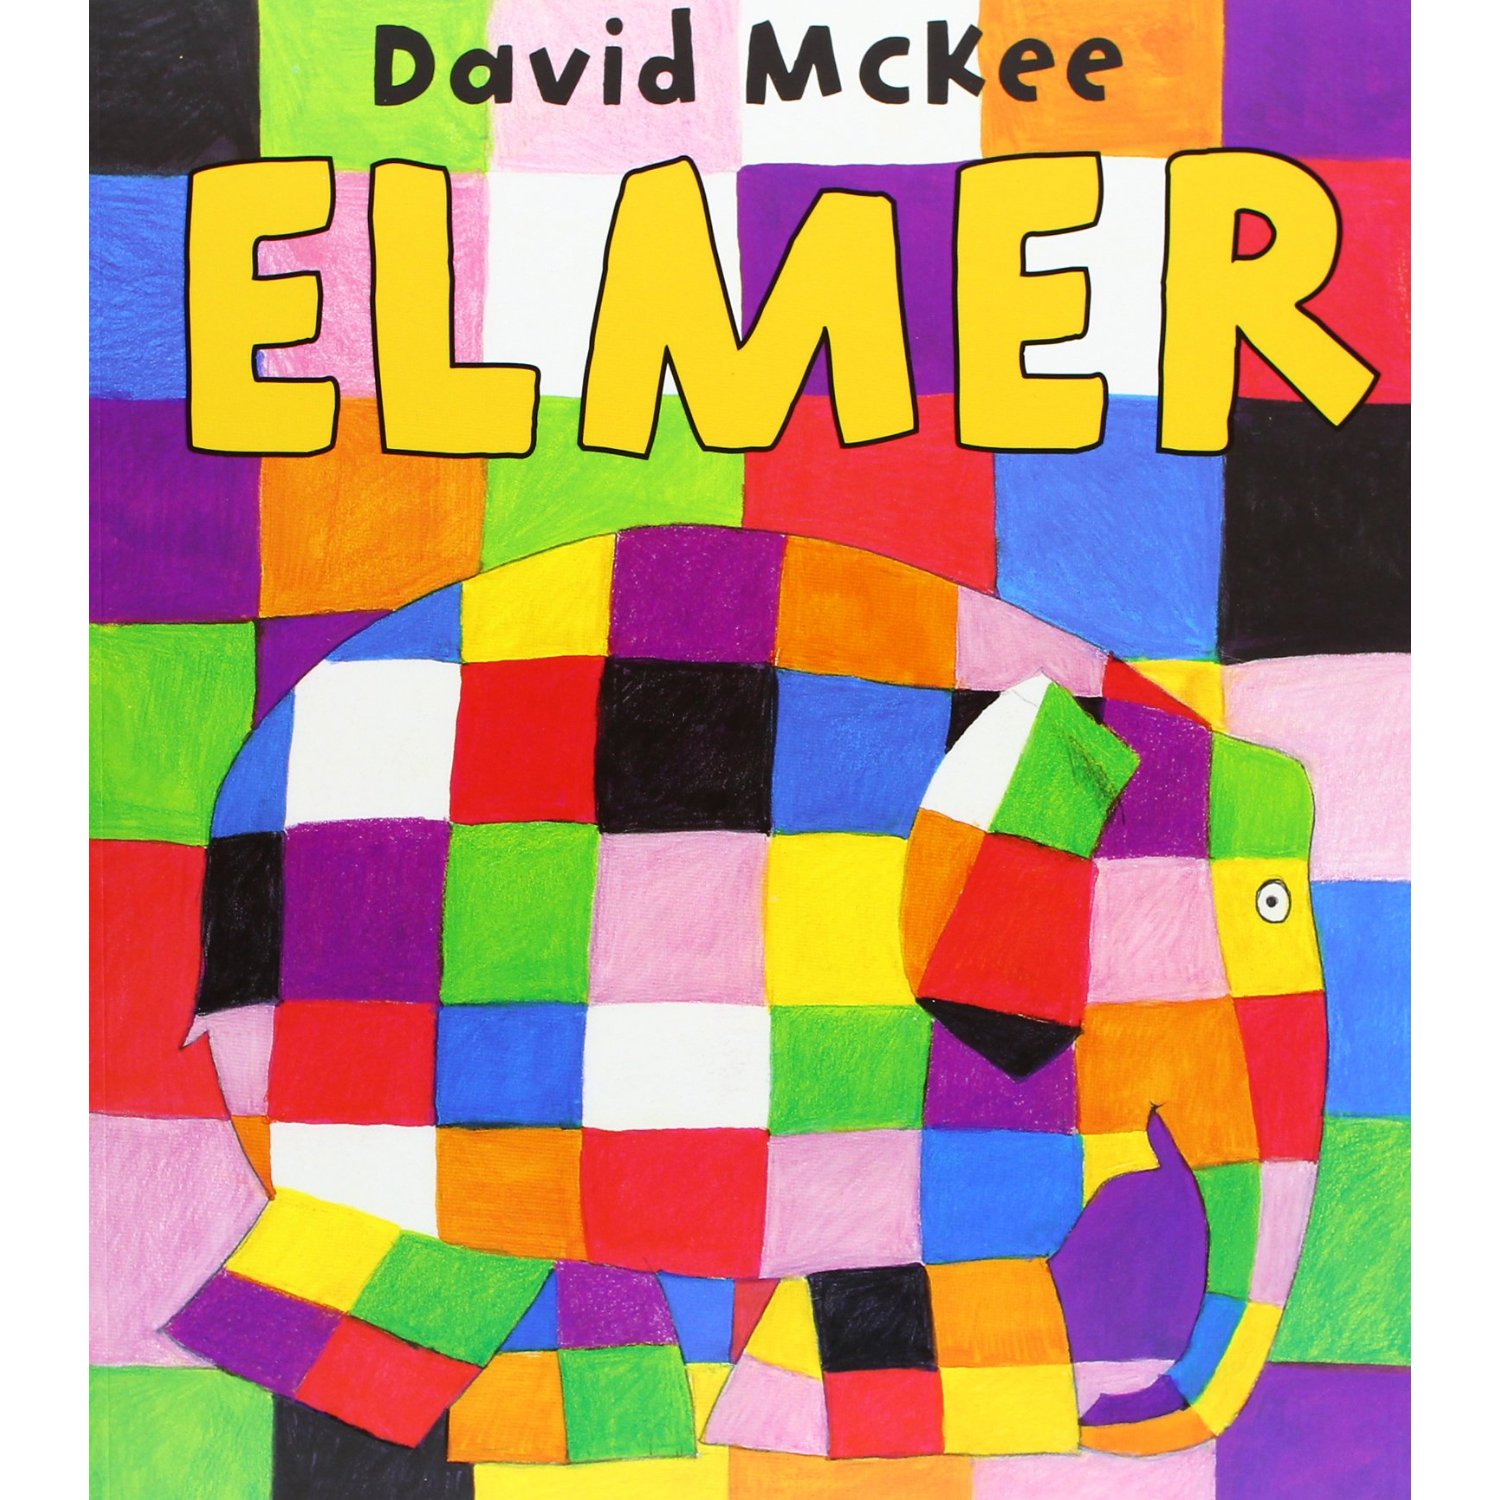 Elmer Elephant